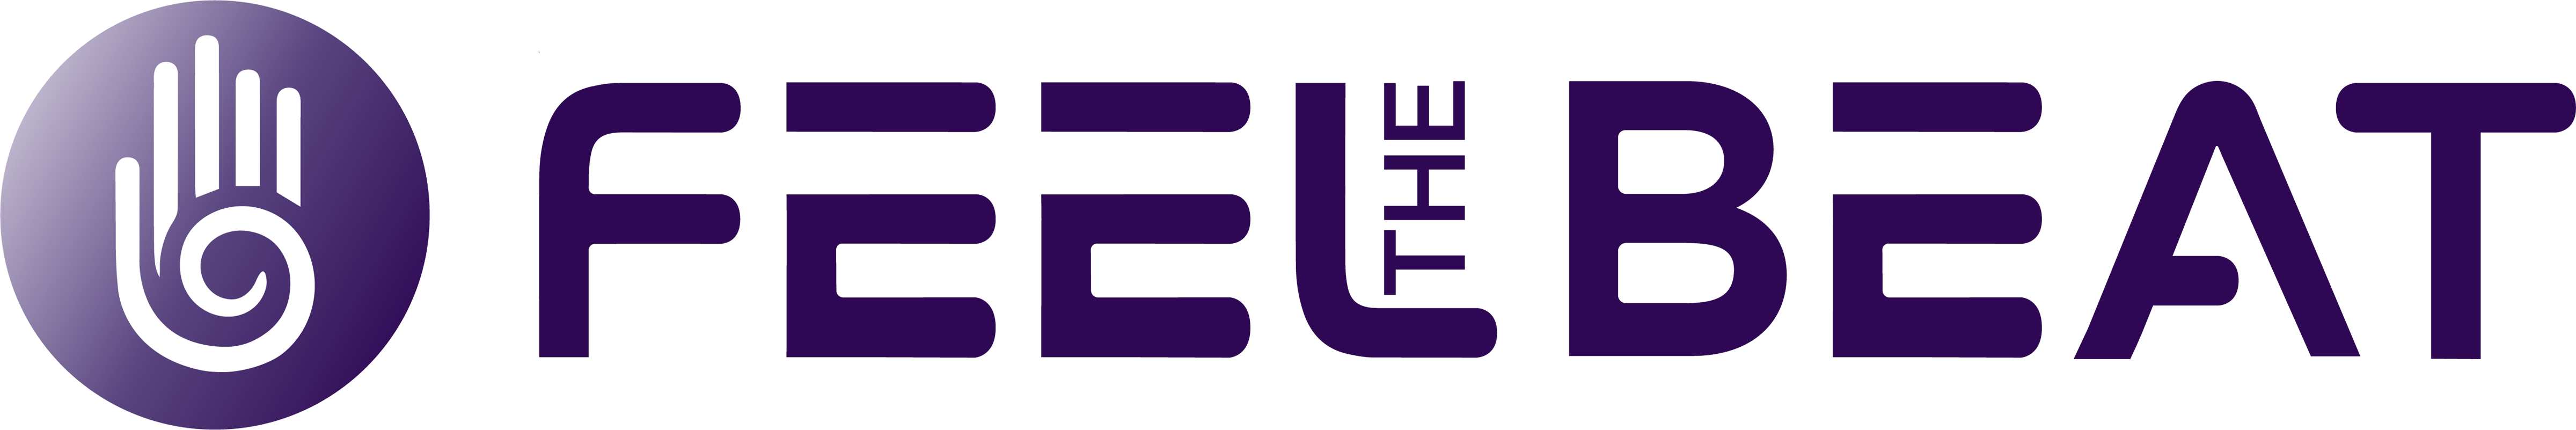 Feel the Beat logo in purple gradient.